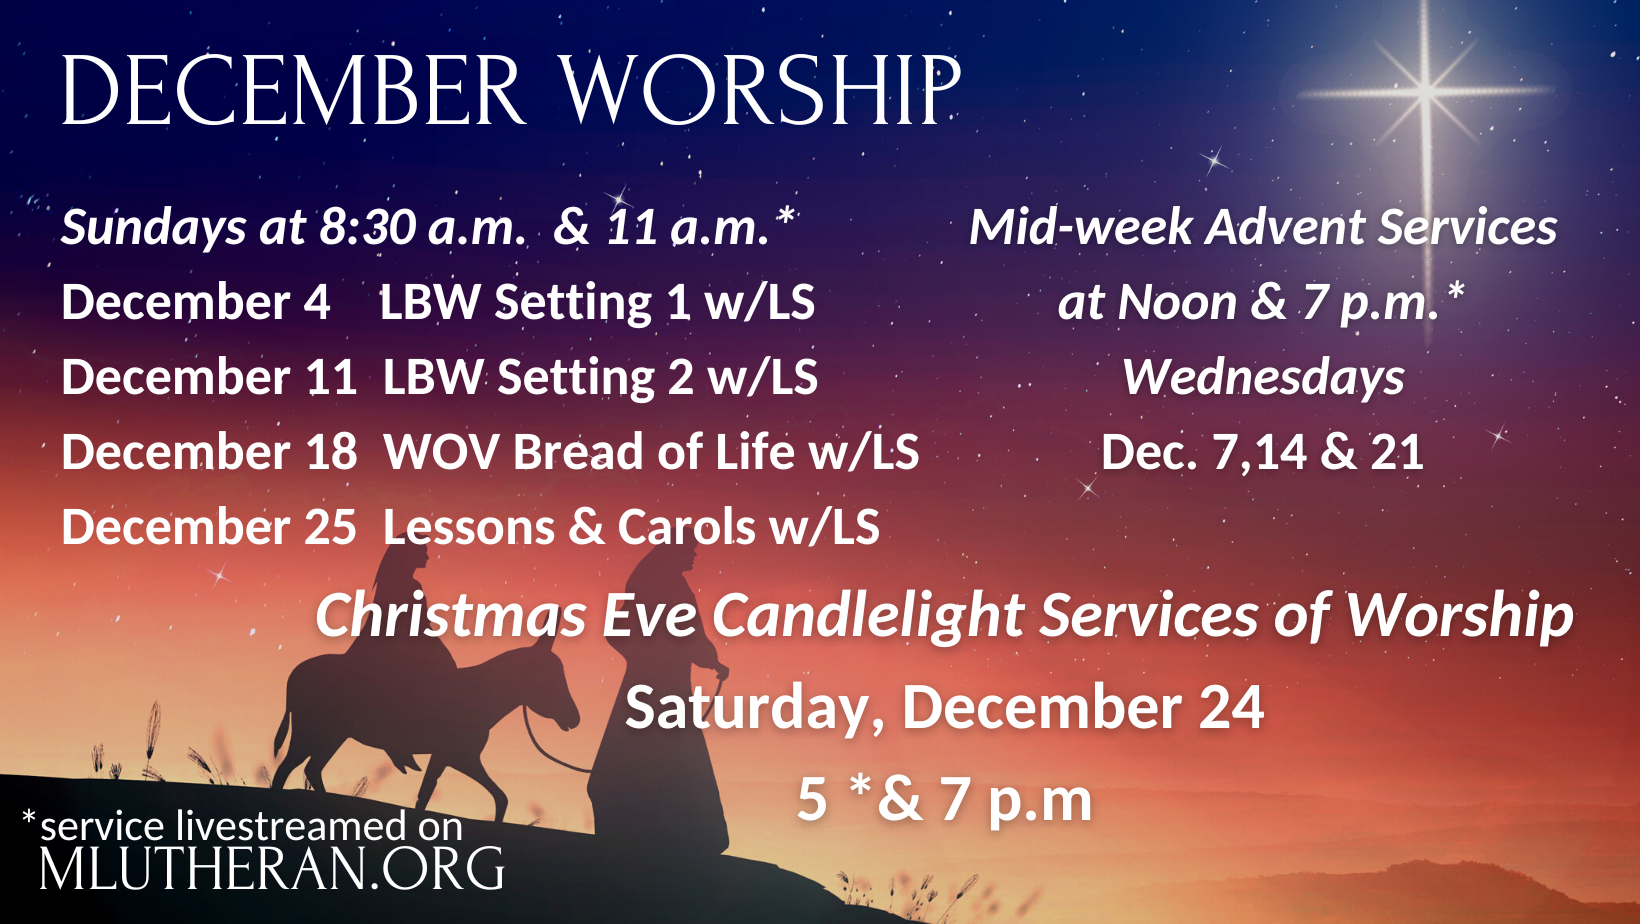 December worship schedu